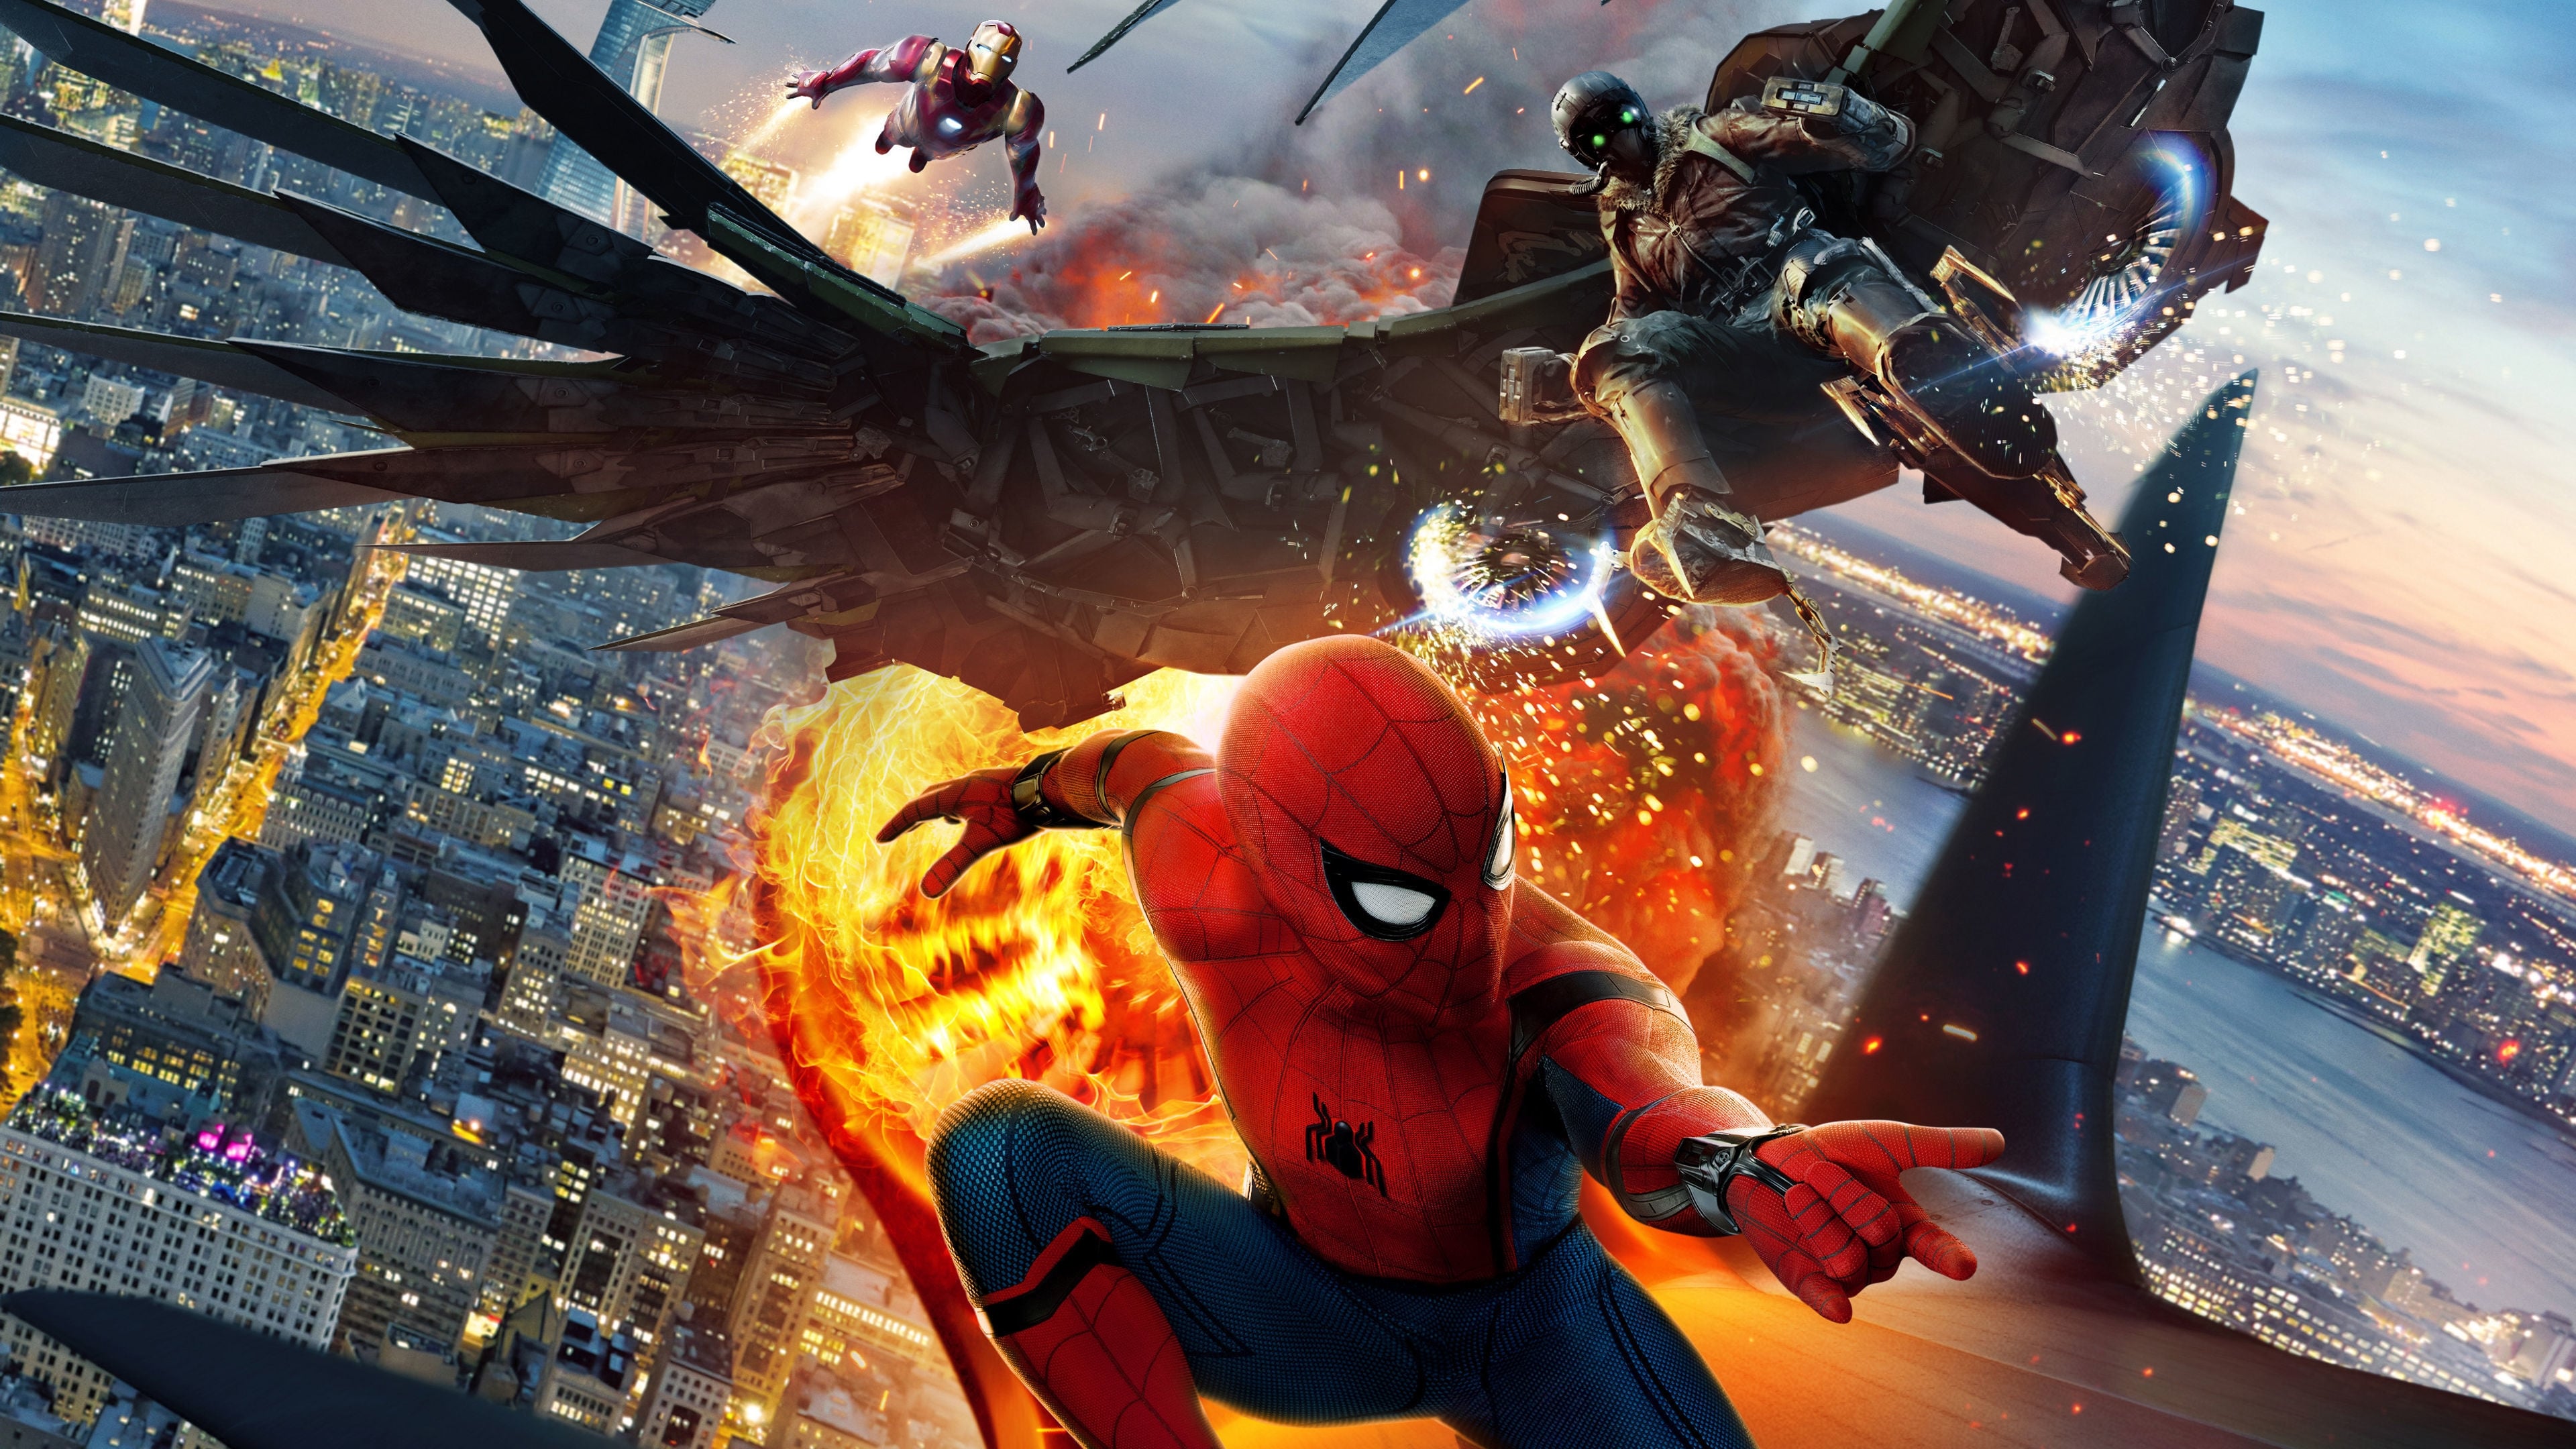 สไปเดอร์แมน: โฮมคัมมิ่ง Spider-Man Homecoming ออนไลน์โดยสมบูรณ์ในปี 2017